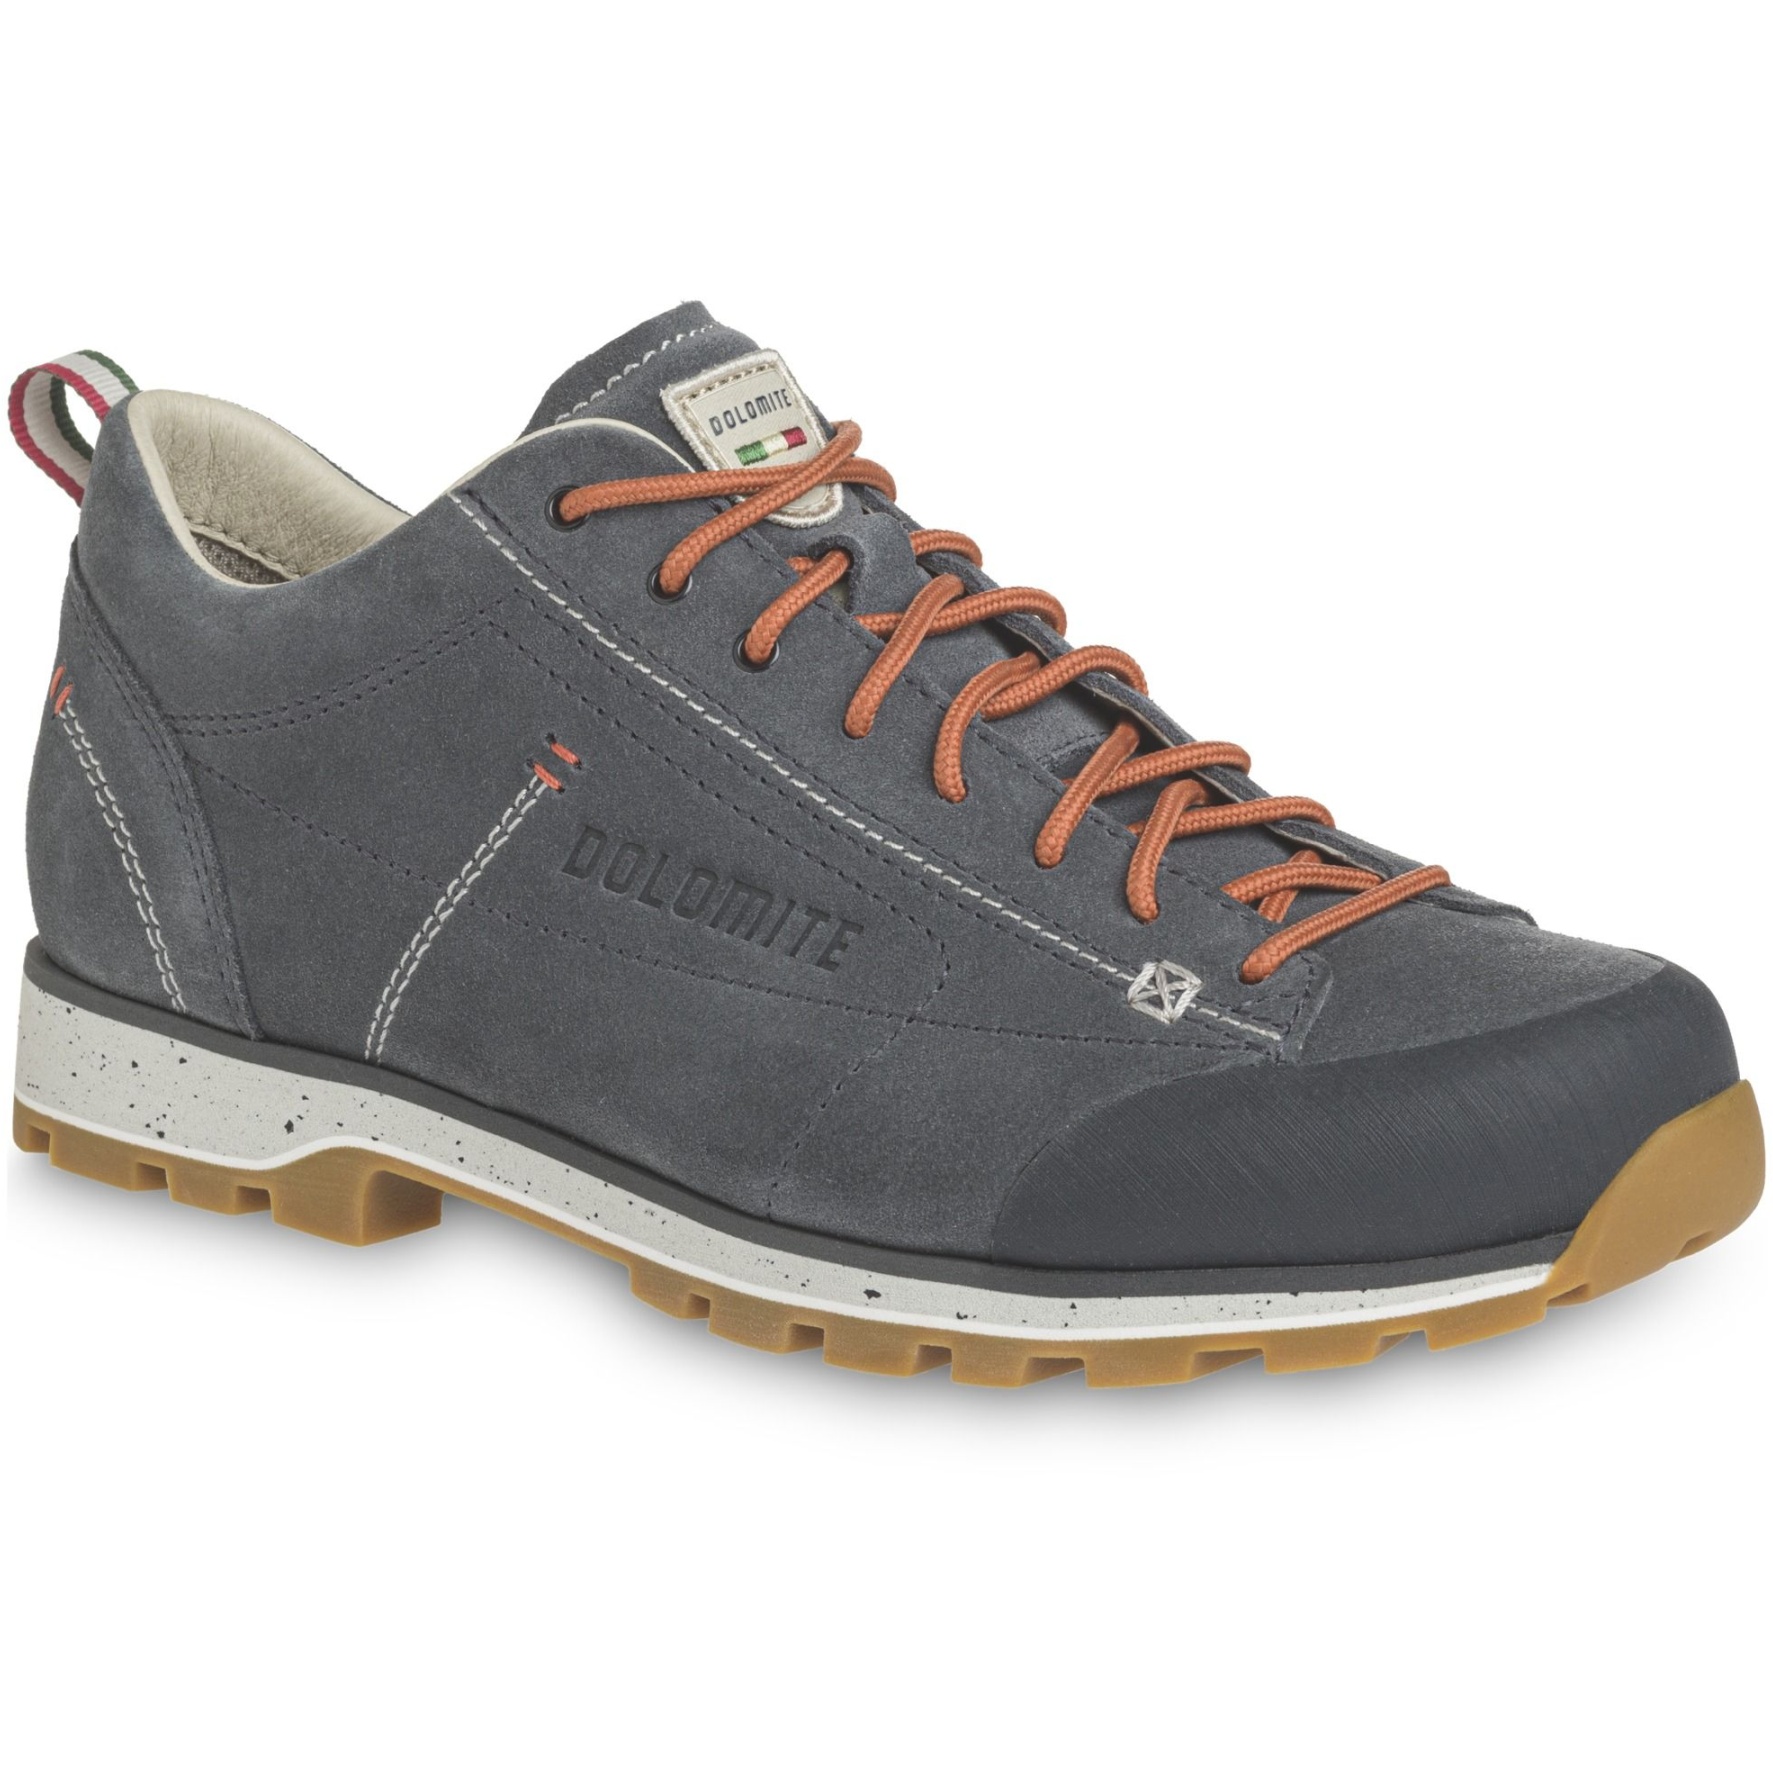 Produktbild von Dolomite 54 Low Evo Schuhe Herren - gunmetal grey/canapa beige